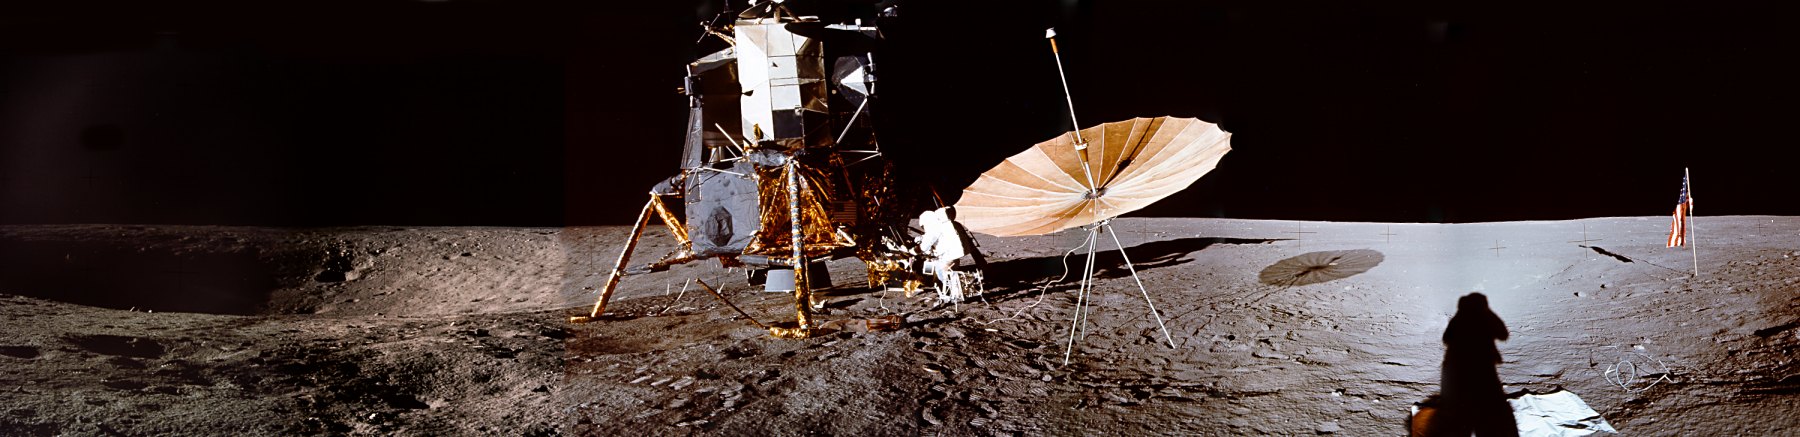 Apollo 12: Luogo allunaggio